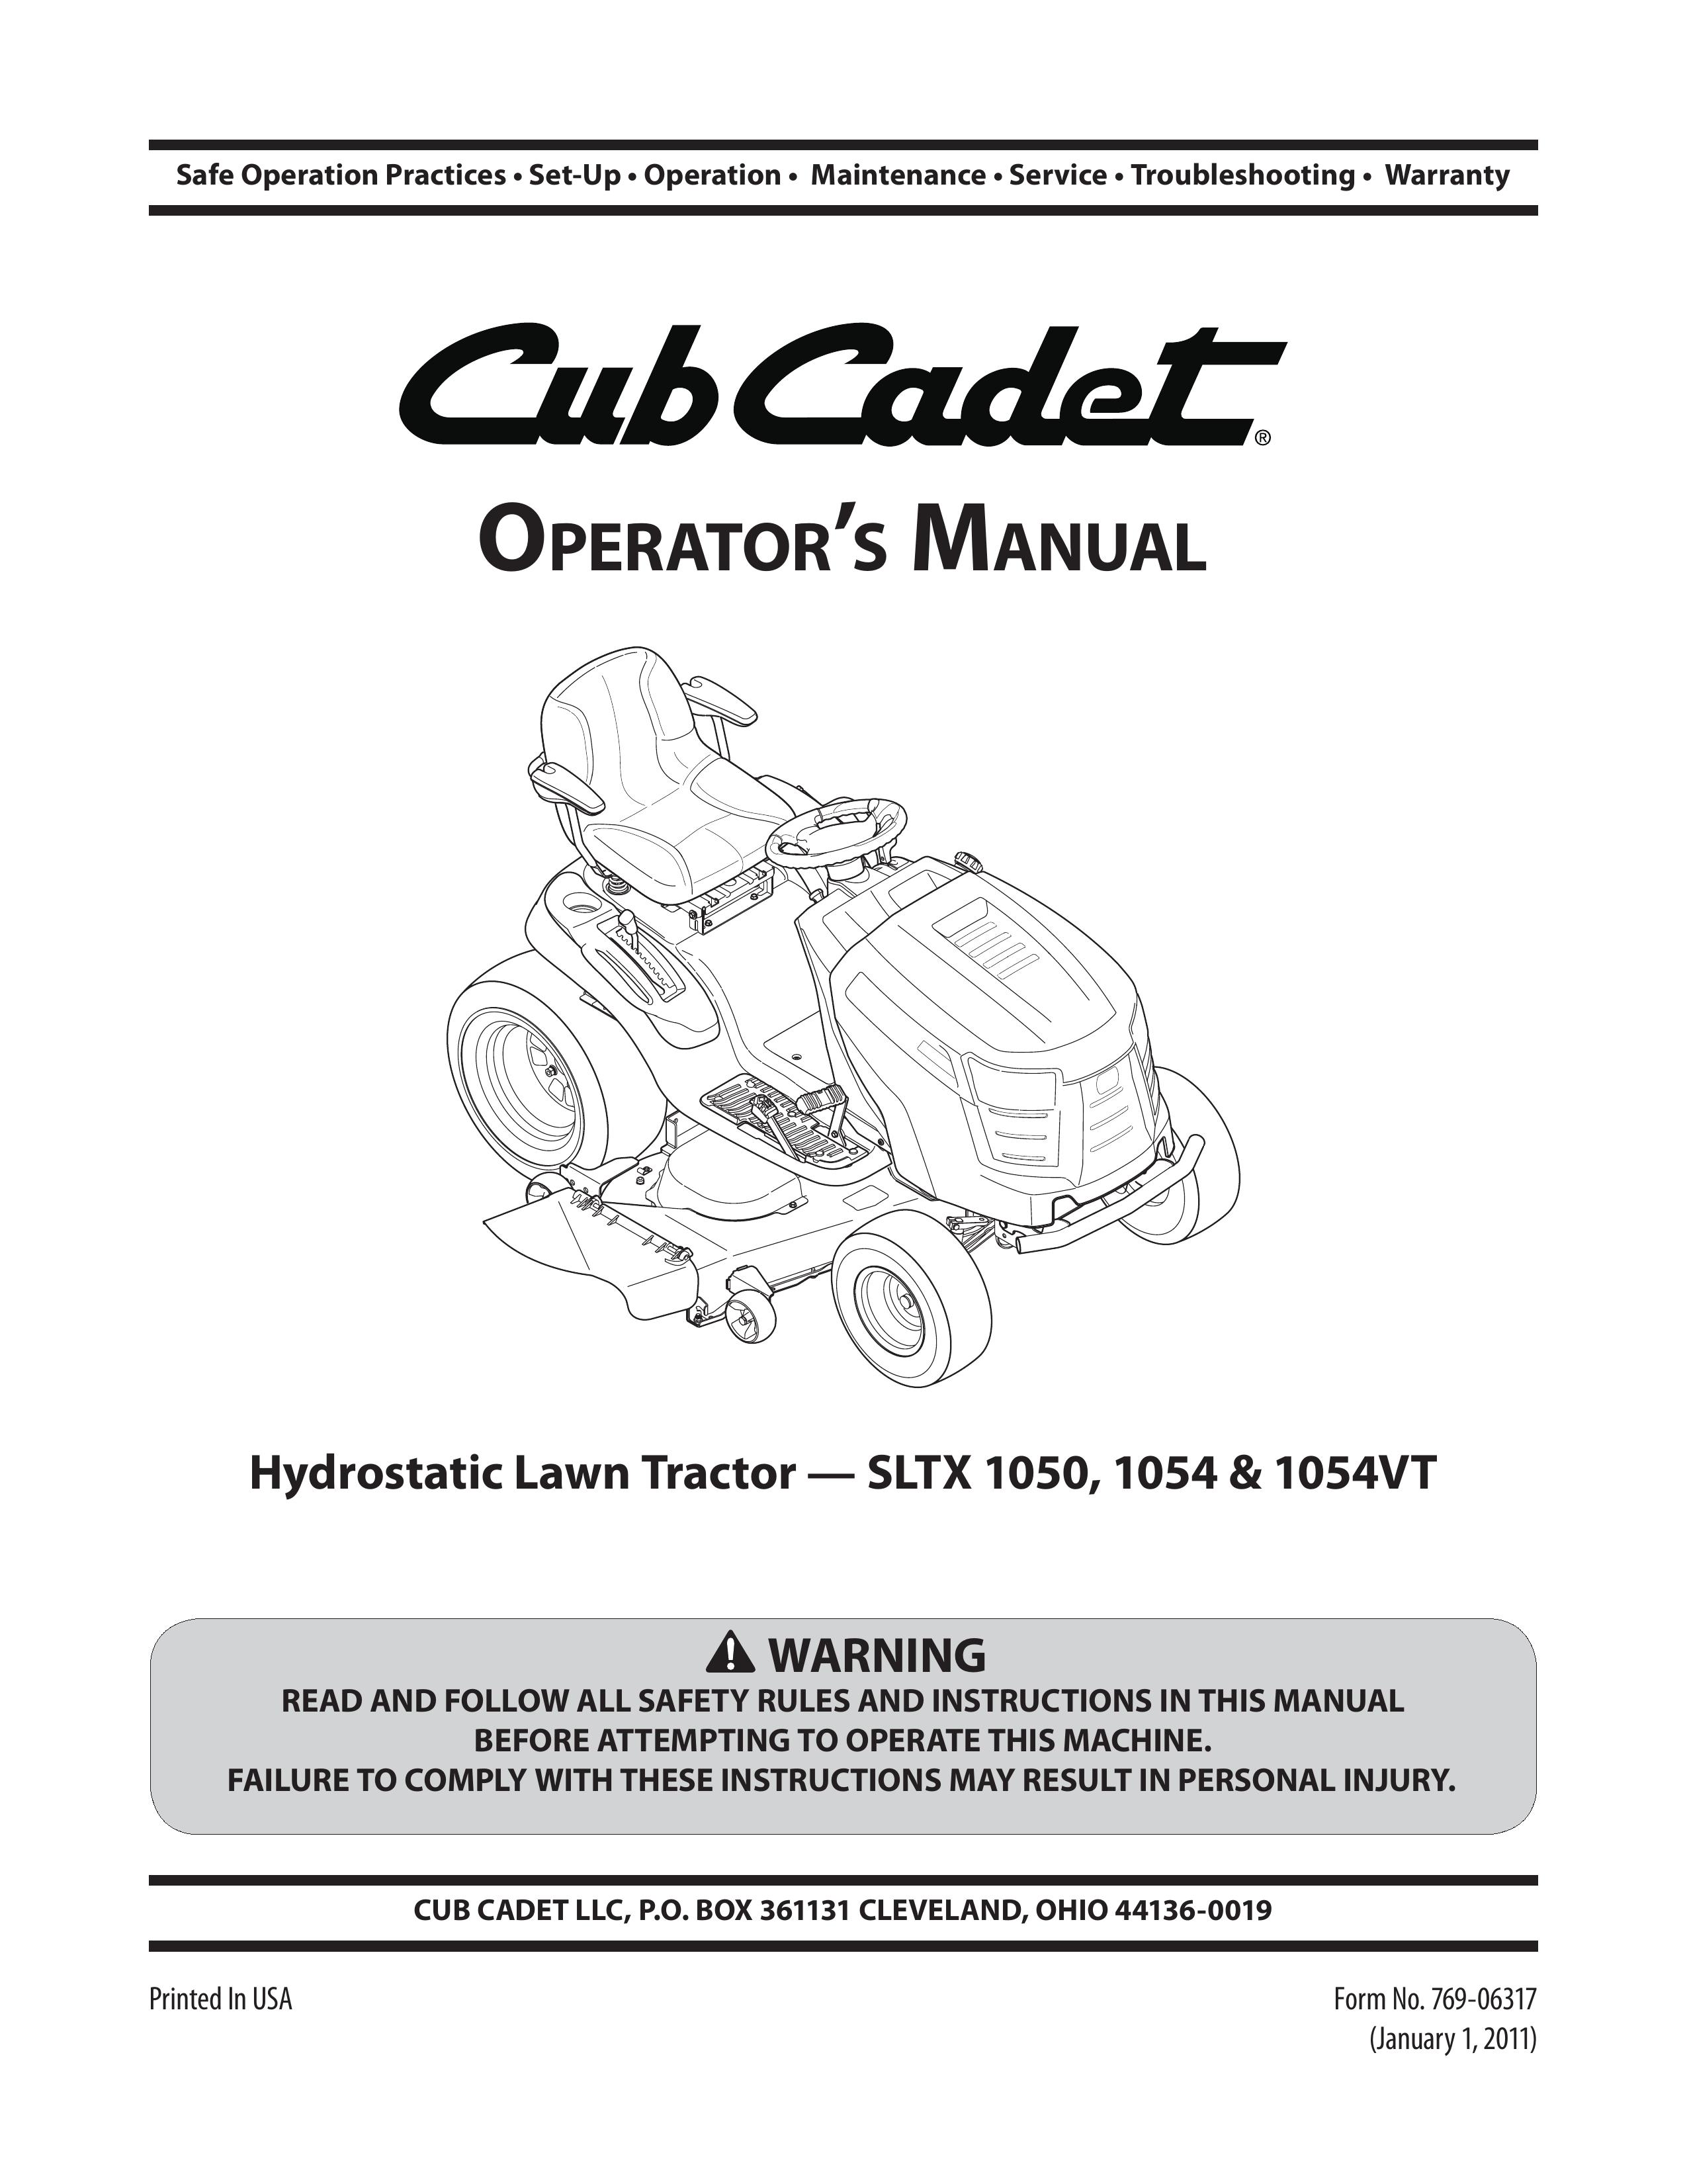 Cub Cadet 1054 Lawn Mower User Manual